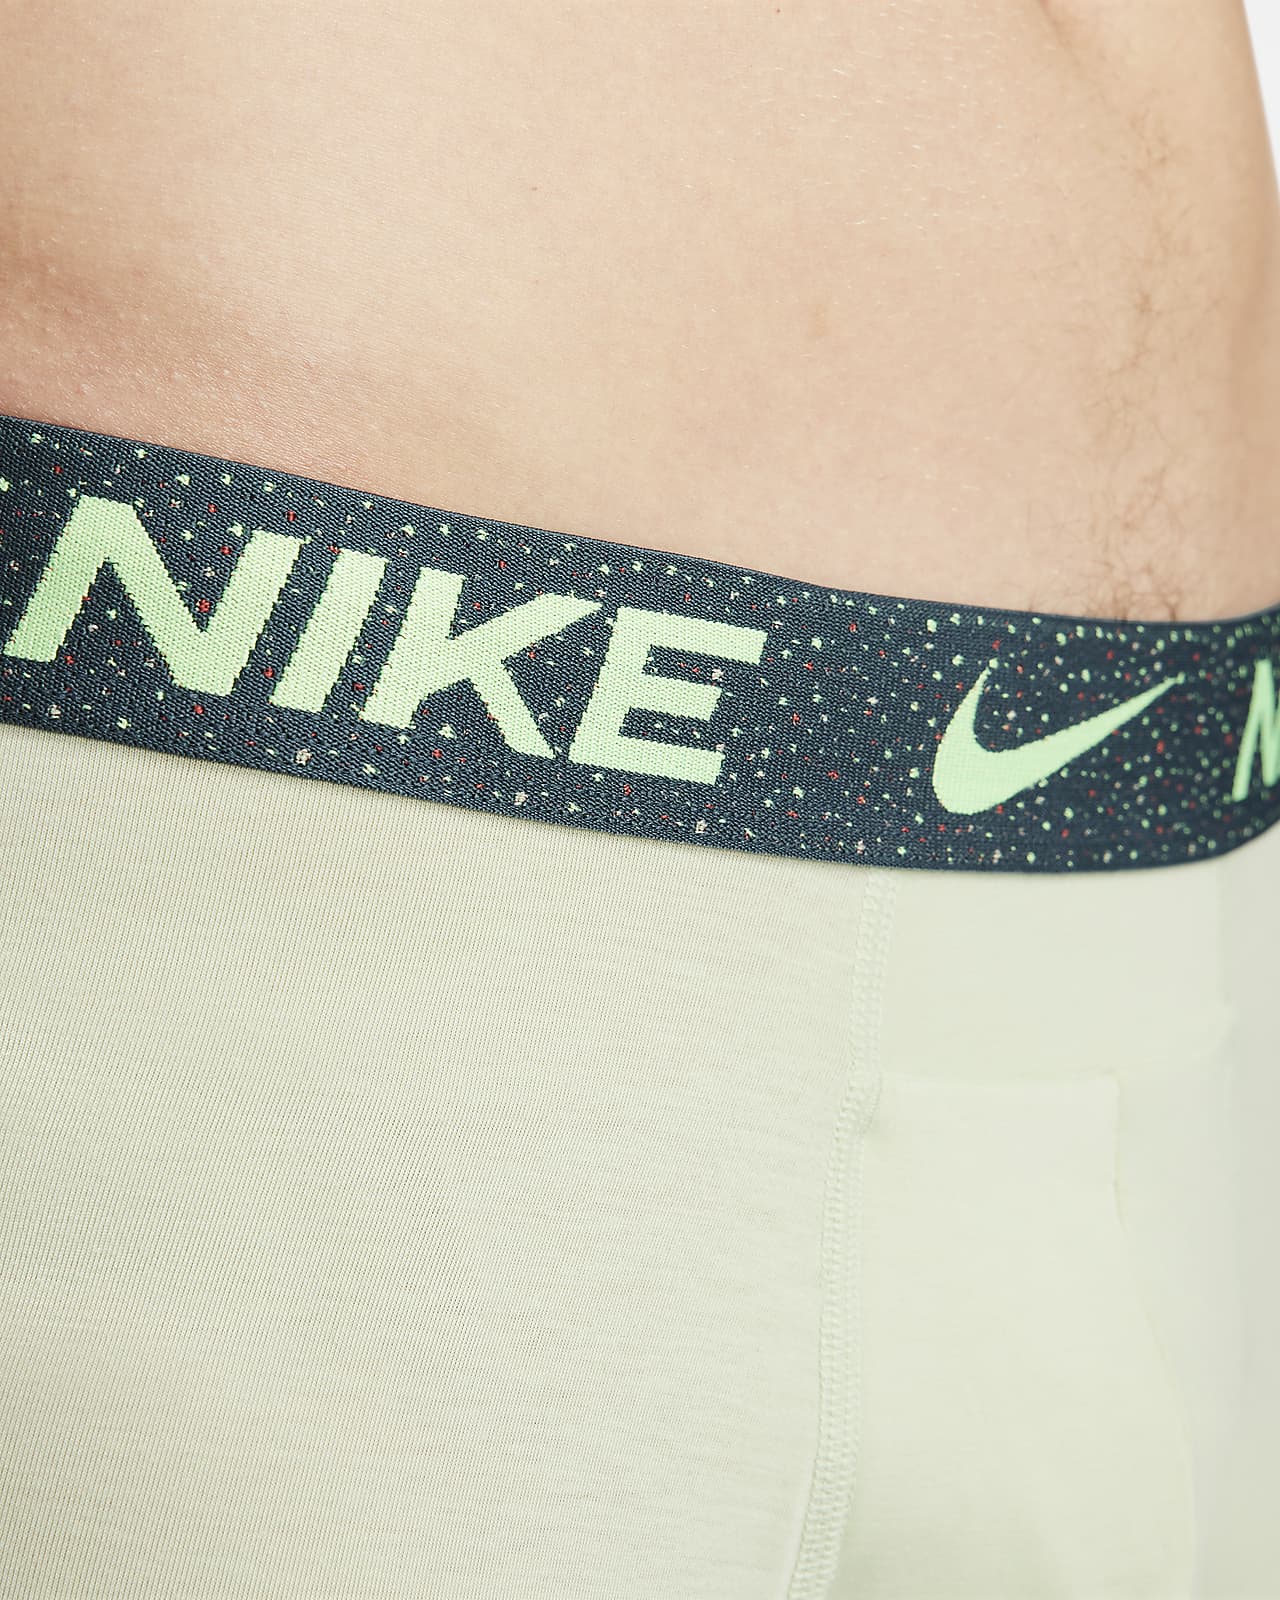 Nike Men's Luxe Cotton-Modal Blend No Fly Boxer Briefs Size 2XL Dark Grey  NWT